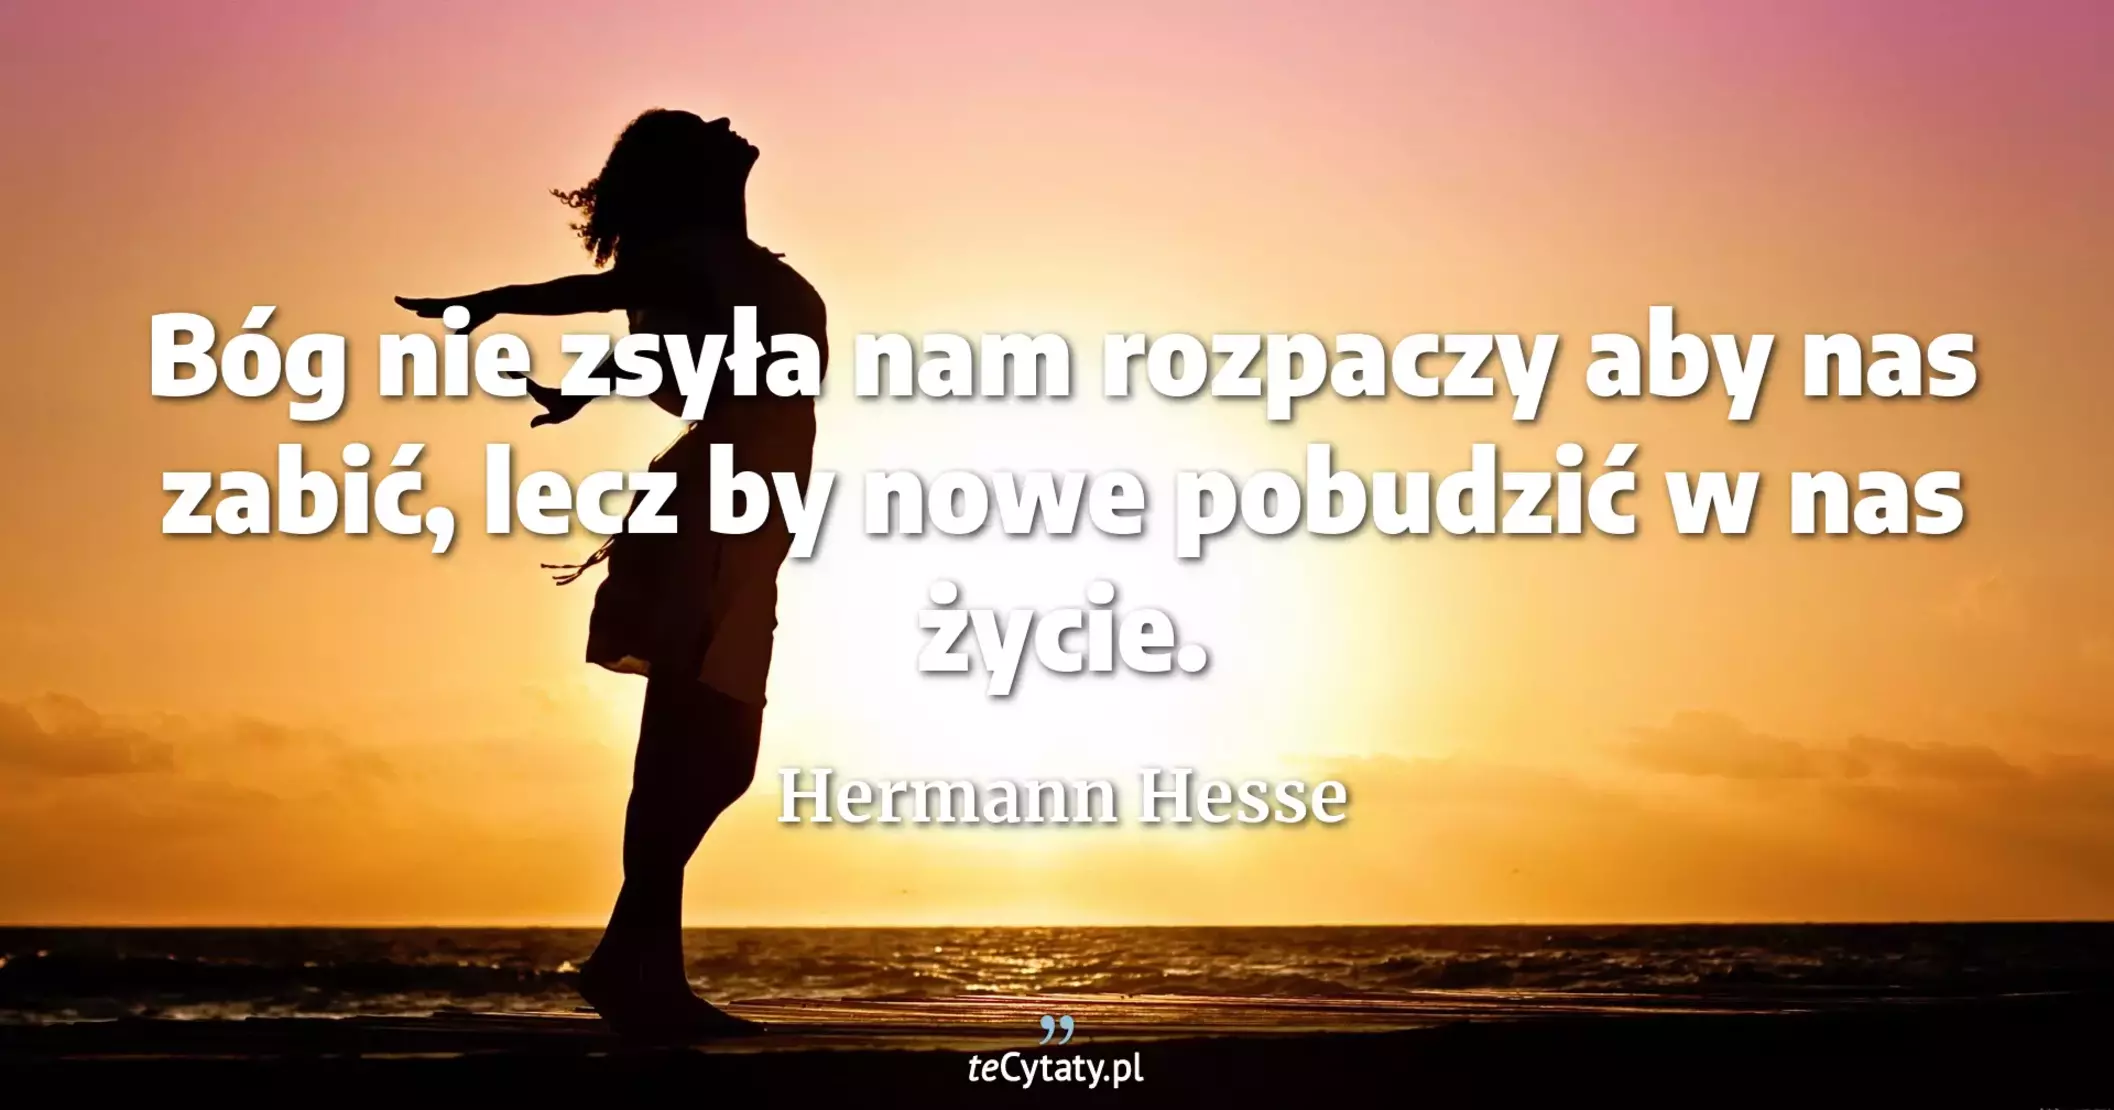 Bóg nie zsyła nam rozpaczy aby nas zabić, lecz by nowe pobudzić w nas życie. - Hermann Hesse